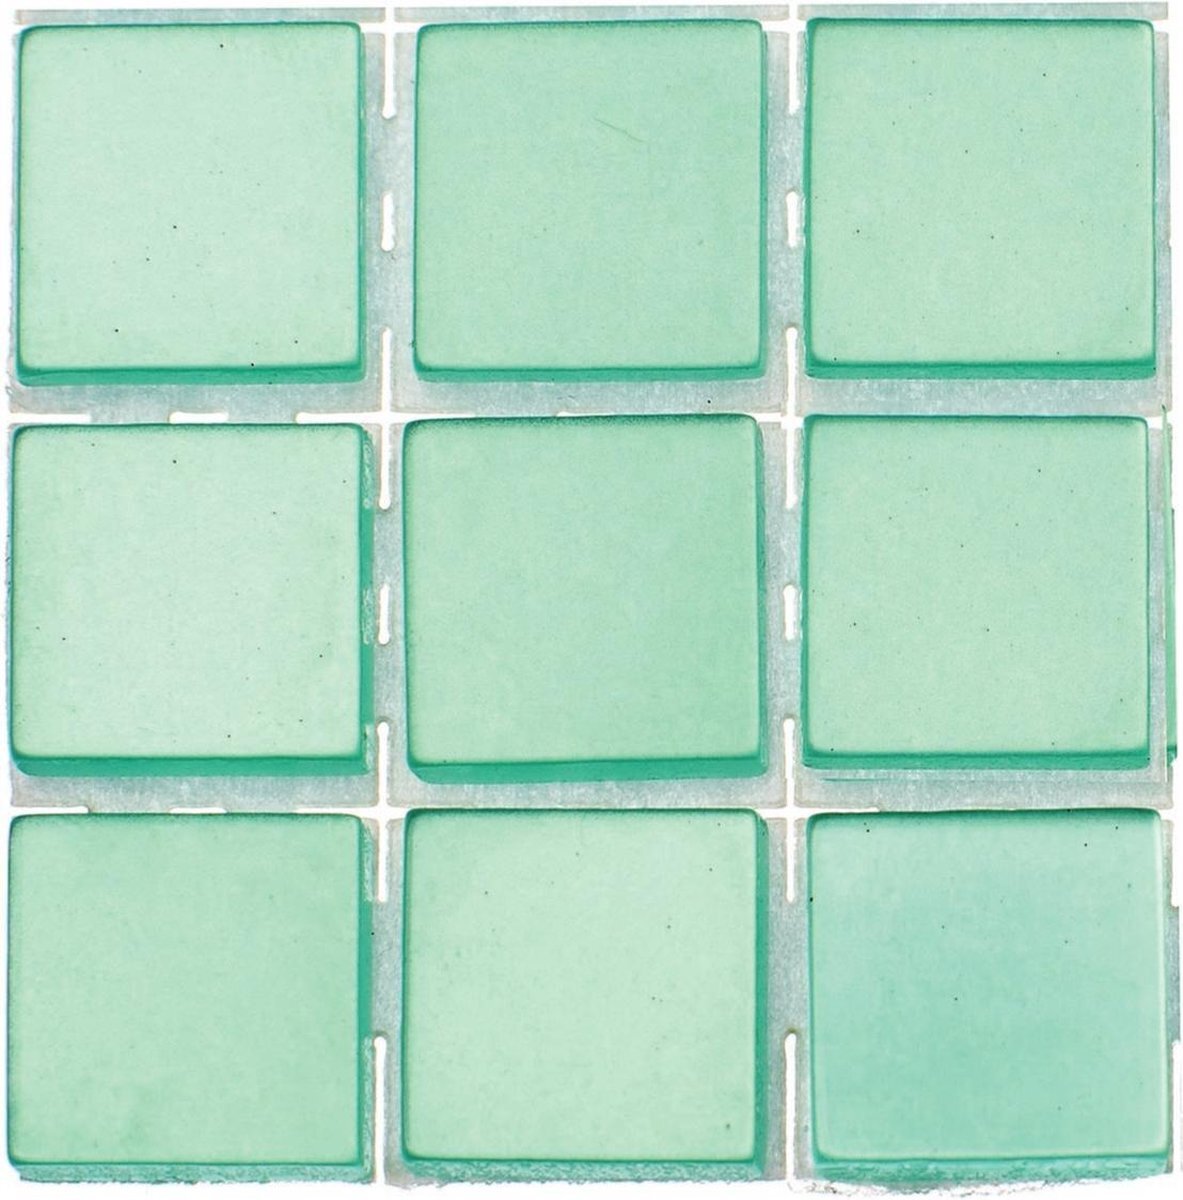 Glorex Hobby 63x stuks mozaieken maken steentjes/tegels kleur turquoise met formaat 10 x 10 x 2 mm